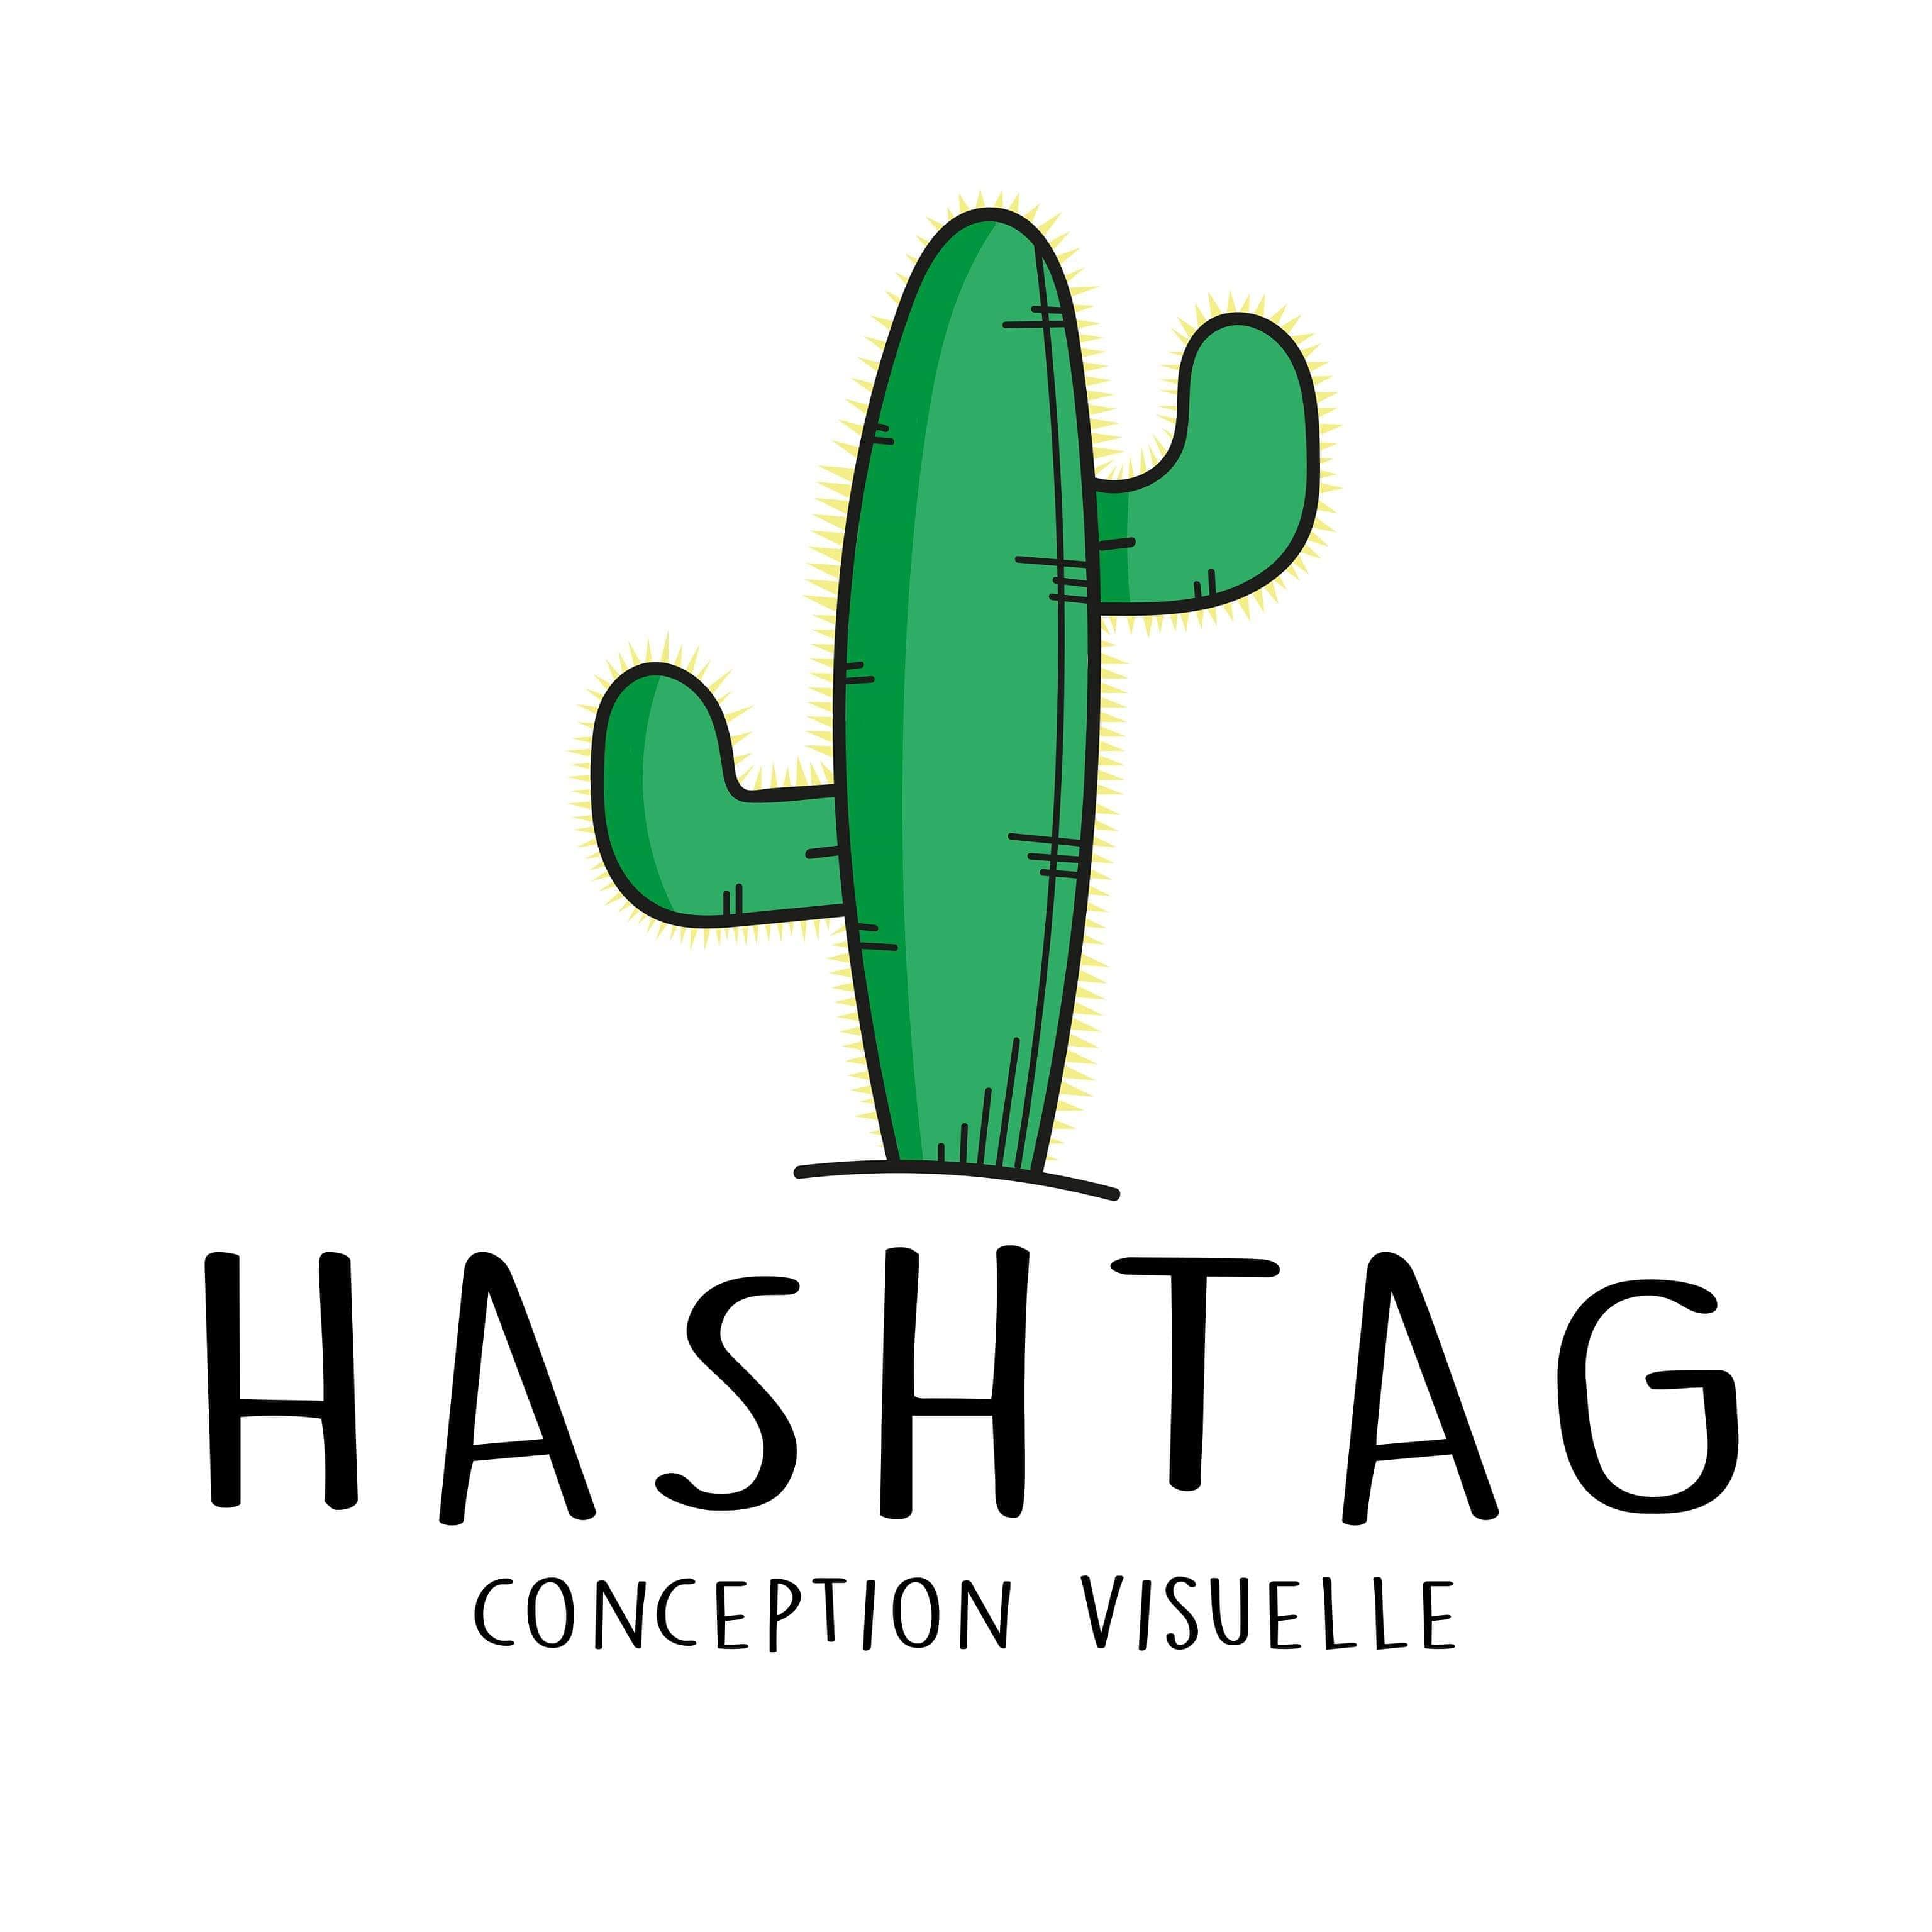 Hashtag conception visuelle